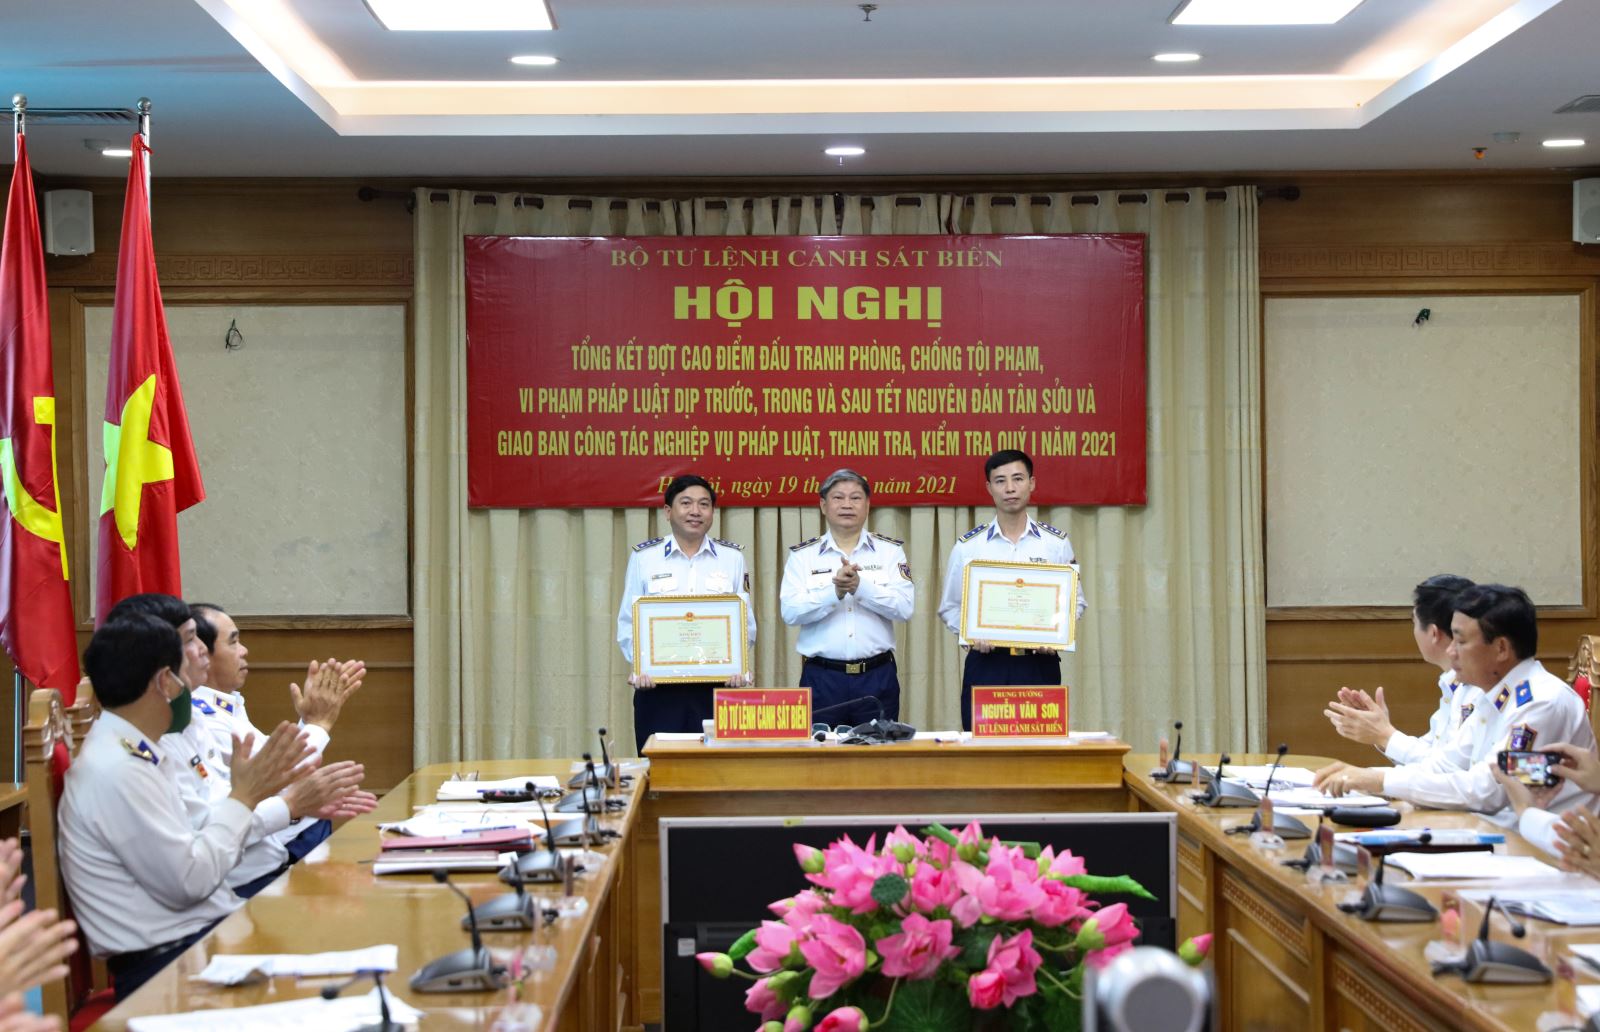 Trung tướng Trần Văn Sơn, Tư lệnh Cảnh sát biển trao thưởng cho các tập thể và cá nhân có thành tích xuất sắc trong đợt cao điểm.